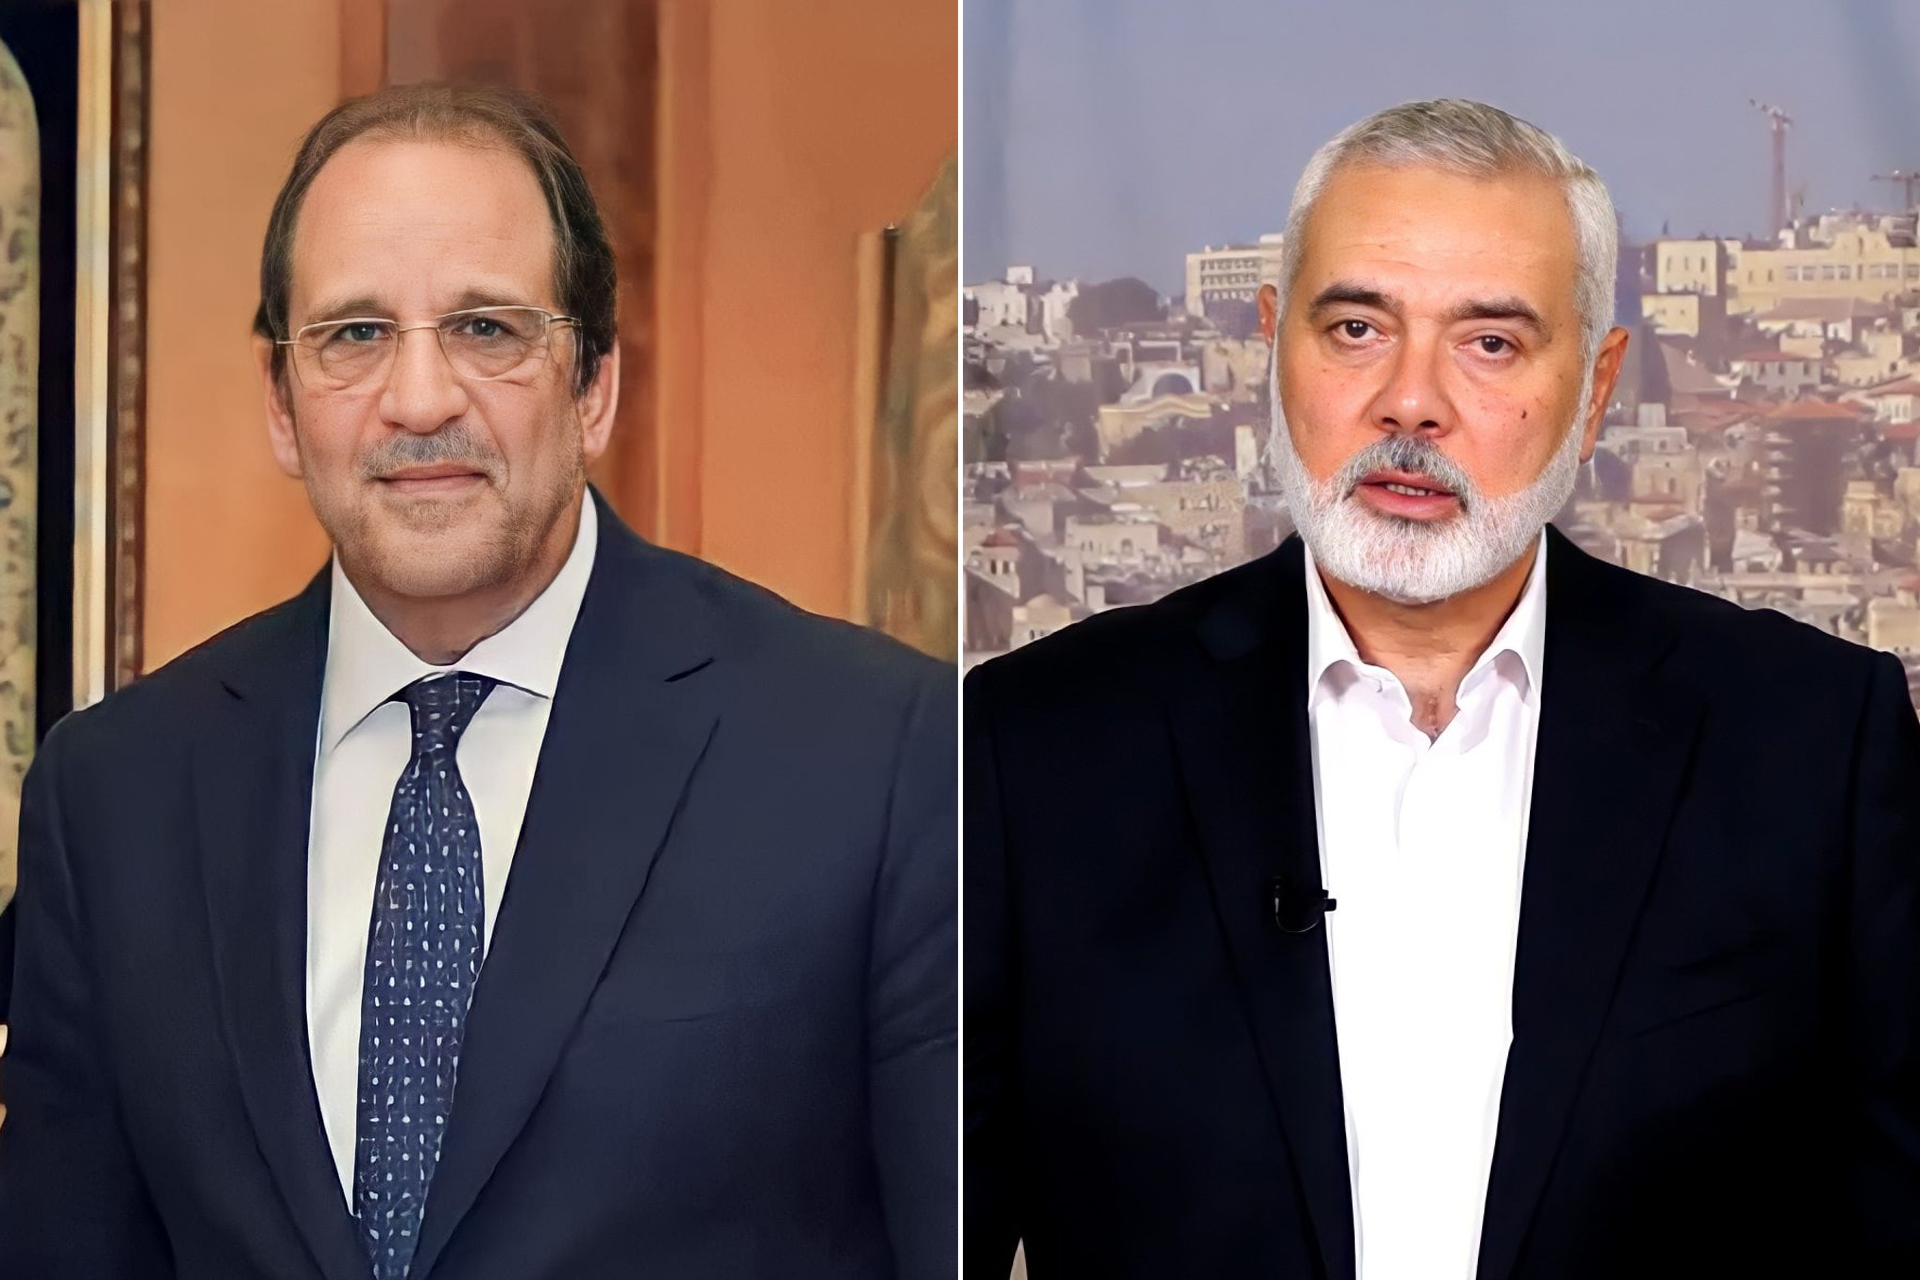 هنية يهاتف رئيس المخابرات المصرية ووفد من حماس في روسيا | أخبار